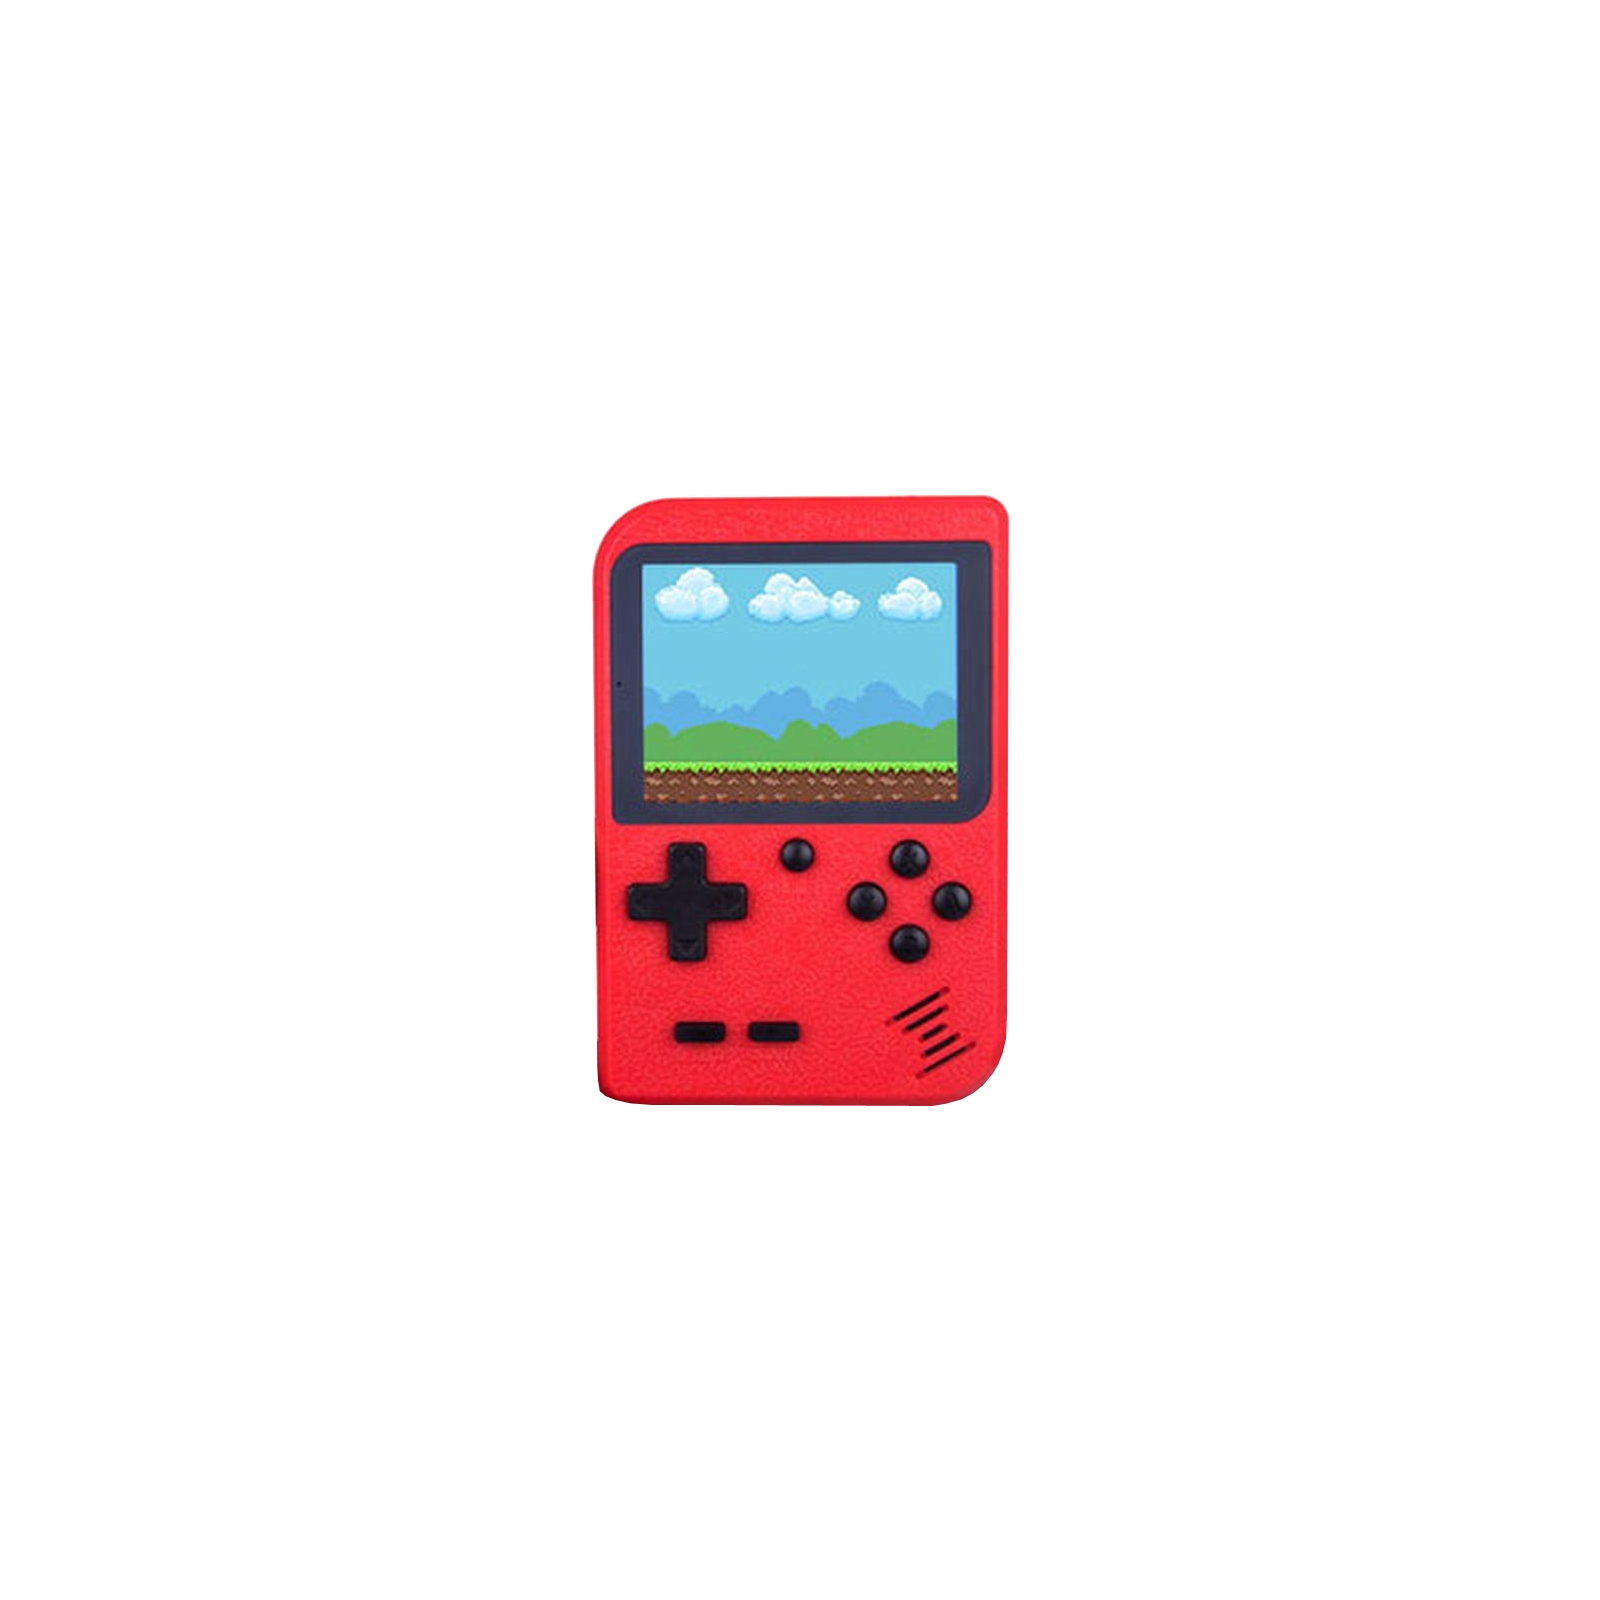 Интерактивная игрушка XoKo игровая консоль Hey Boy красная (XOKO НB-RD) изображение 2